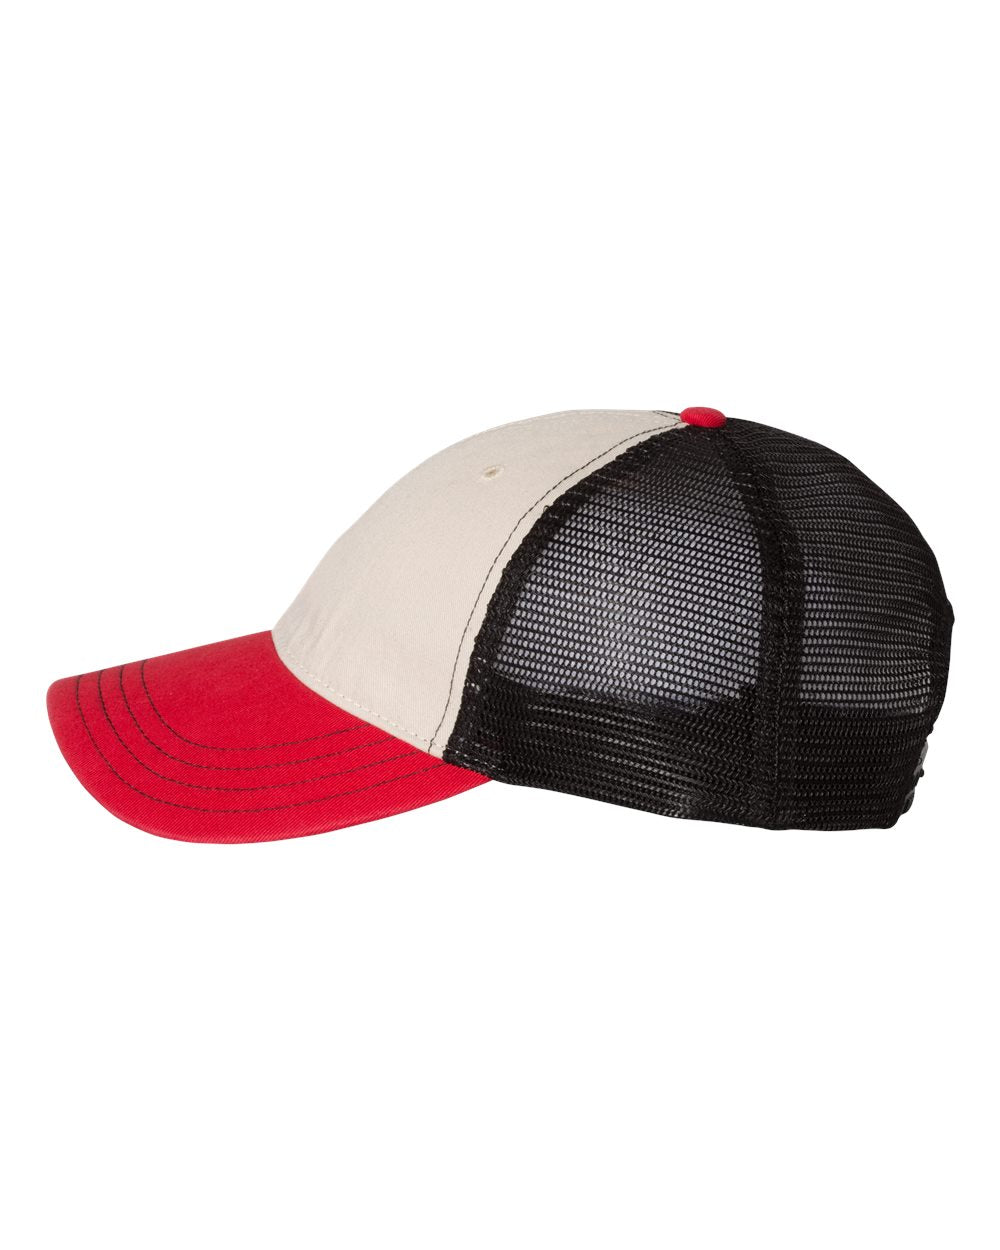 Richardson Garment-Washed Customized Trucker Caps, Stone Black Red